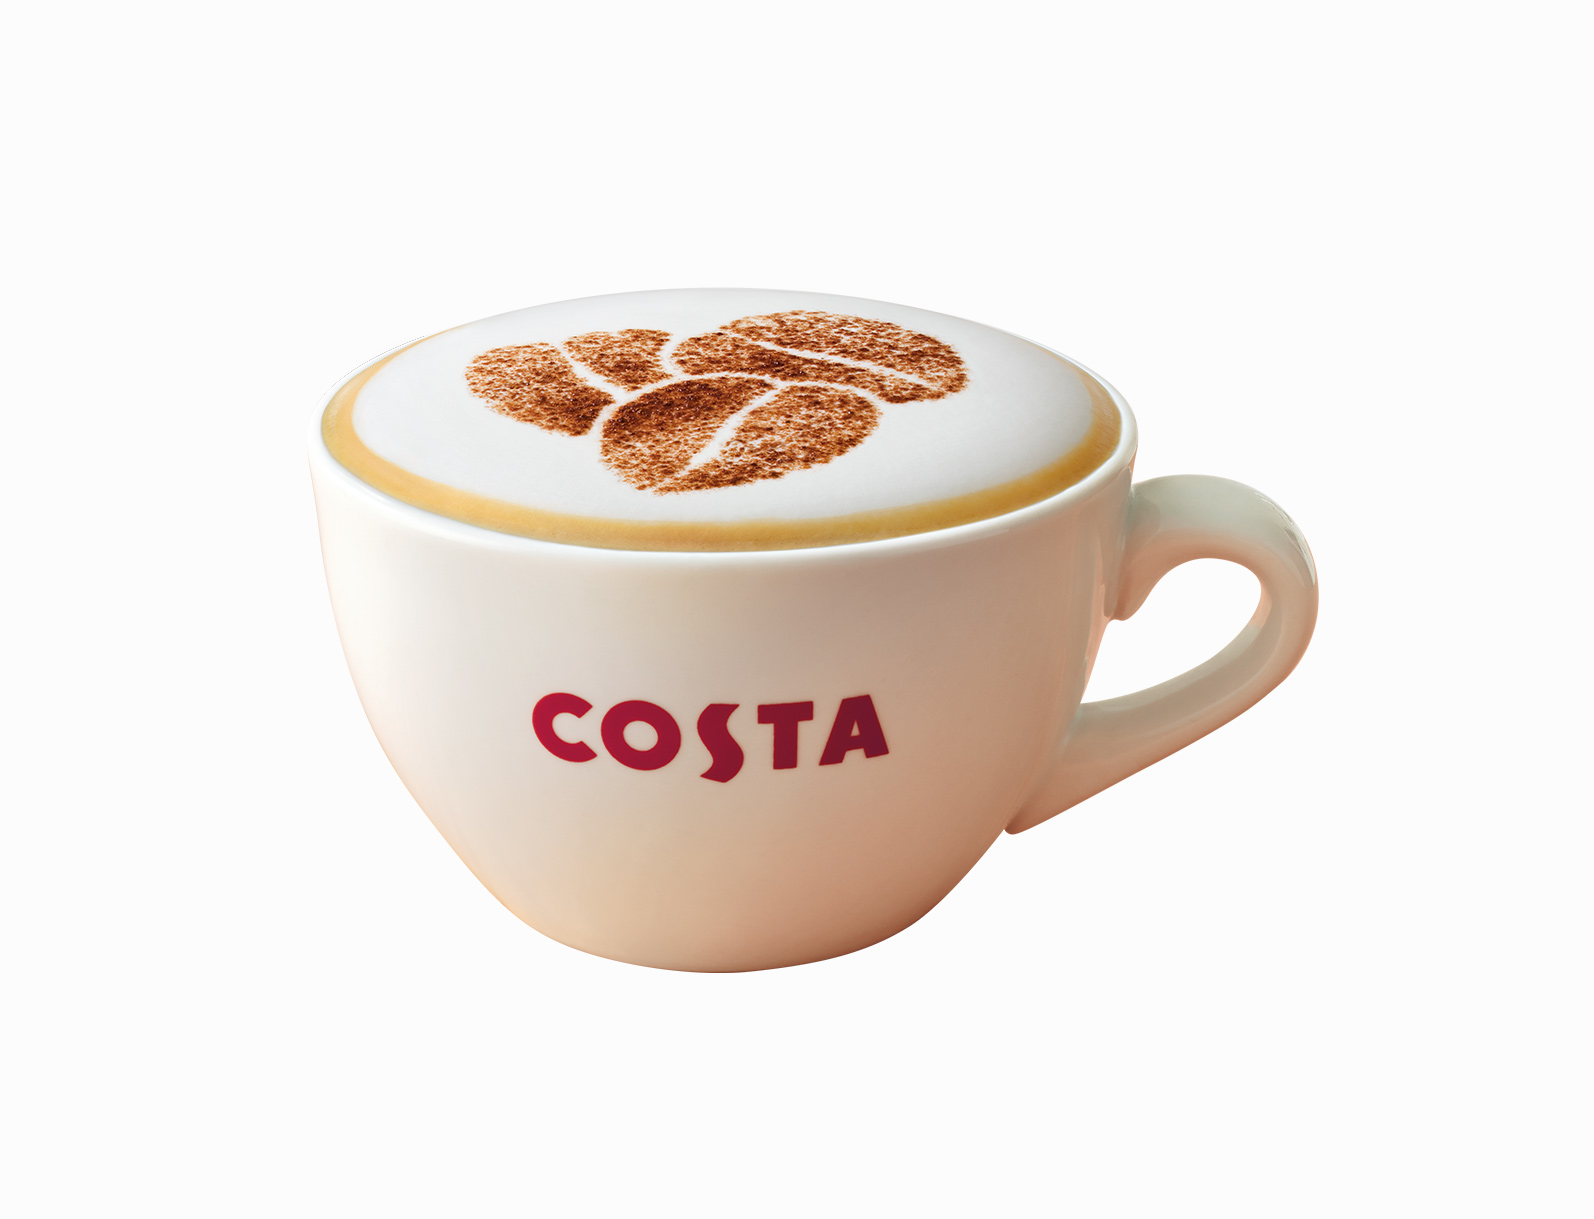 Costa Coffee'de mug veya termos alışverişinde 1 küçük boy kahve hediye.kahve hediye -1